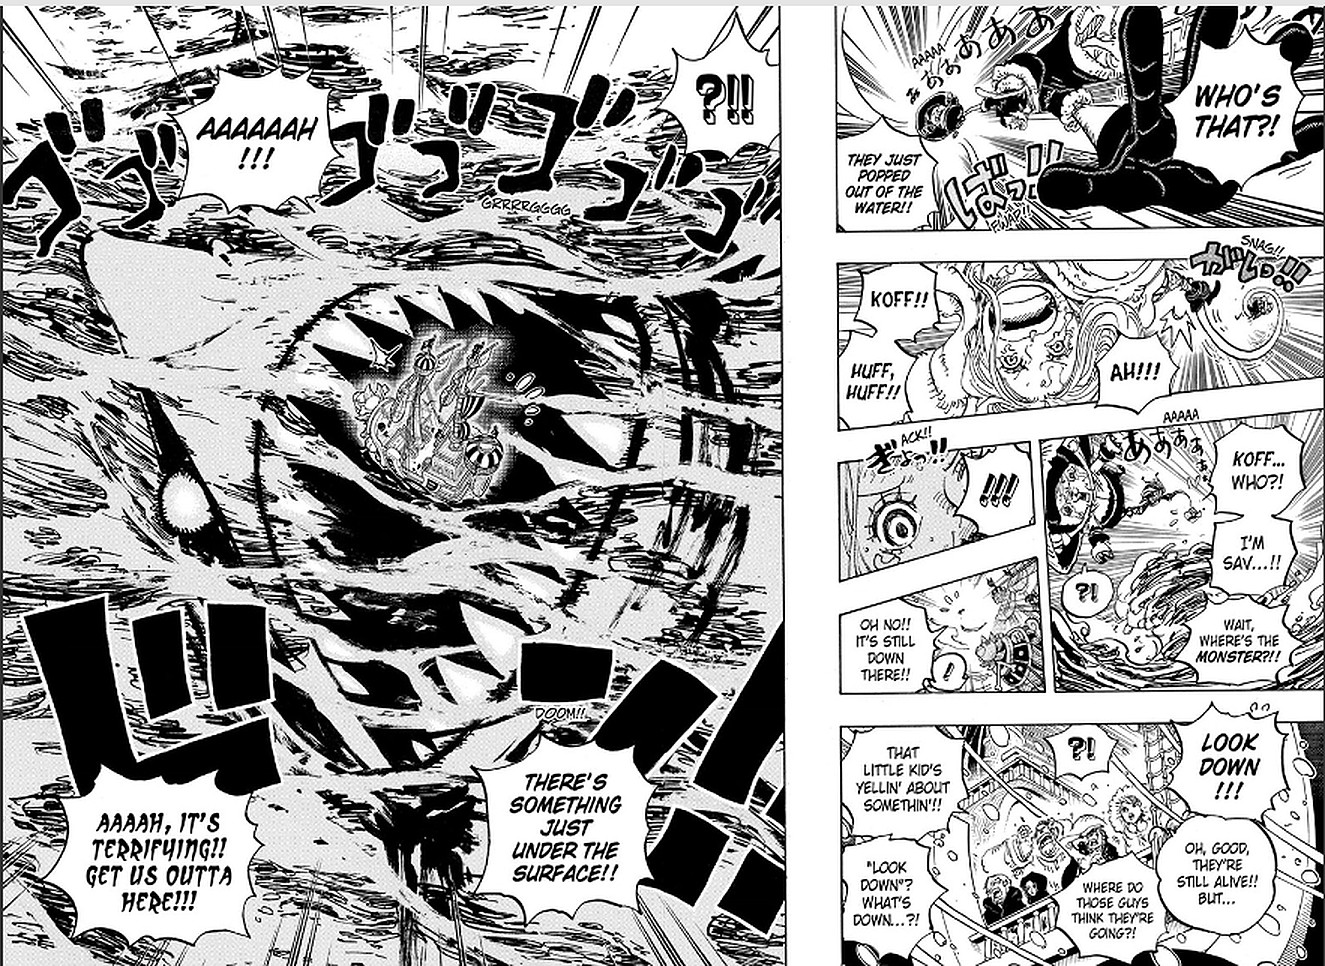 One Piece Chapitre 1062 Spoiler : Les pirates du chapeau de paille piégés  sur l'île de Vegapunk ! : r/newsmangasfr